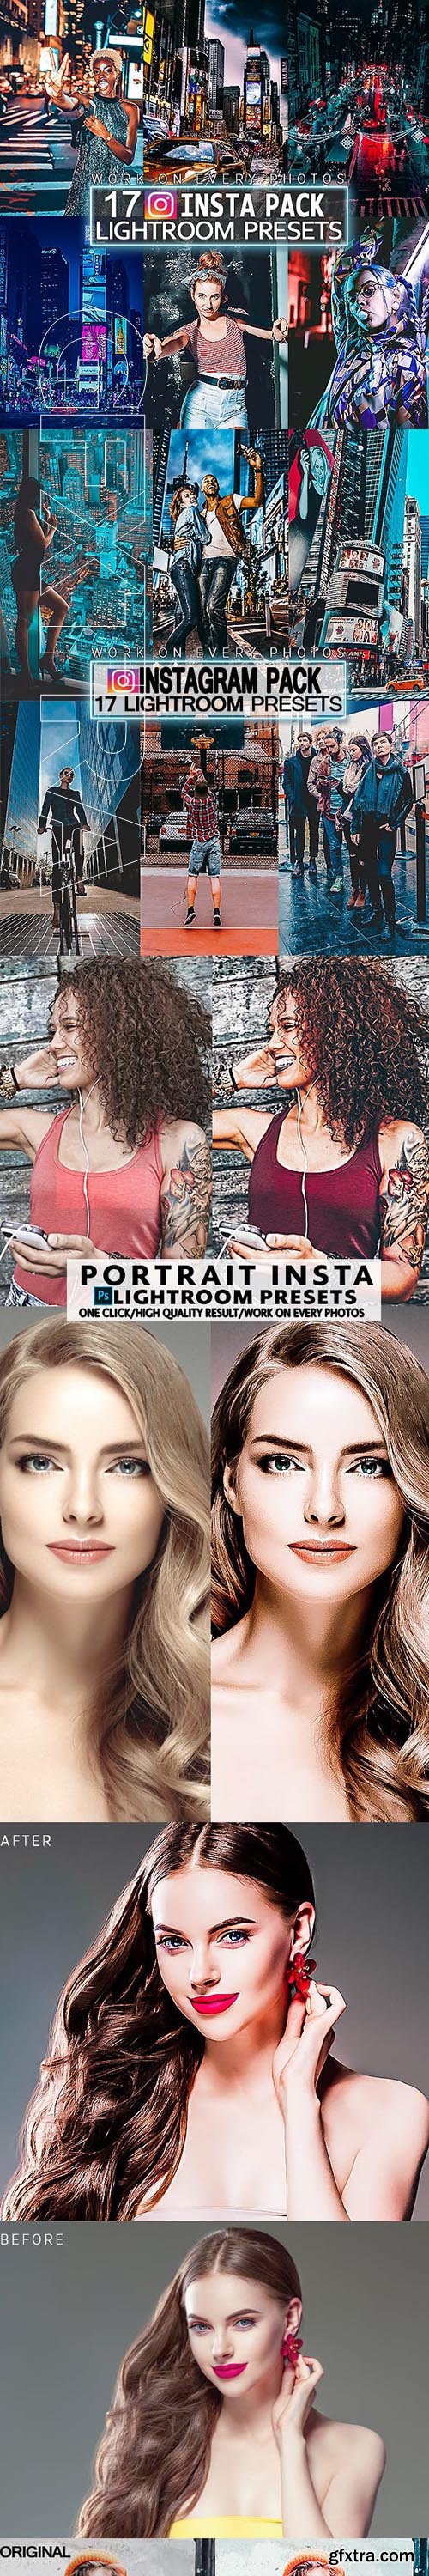 GraphicRiver - Instagram Pack LIghtroom Presets Bundle 23381412